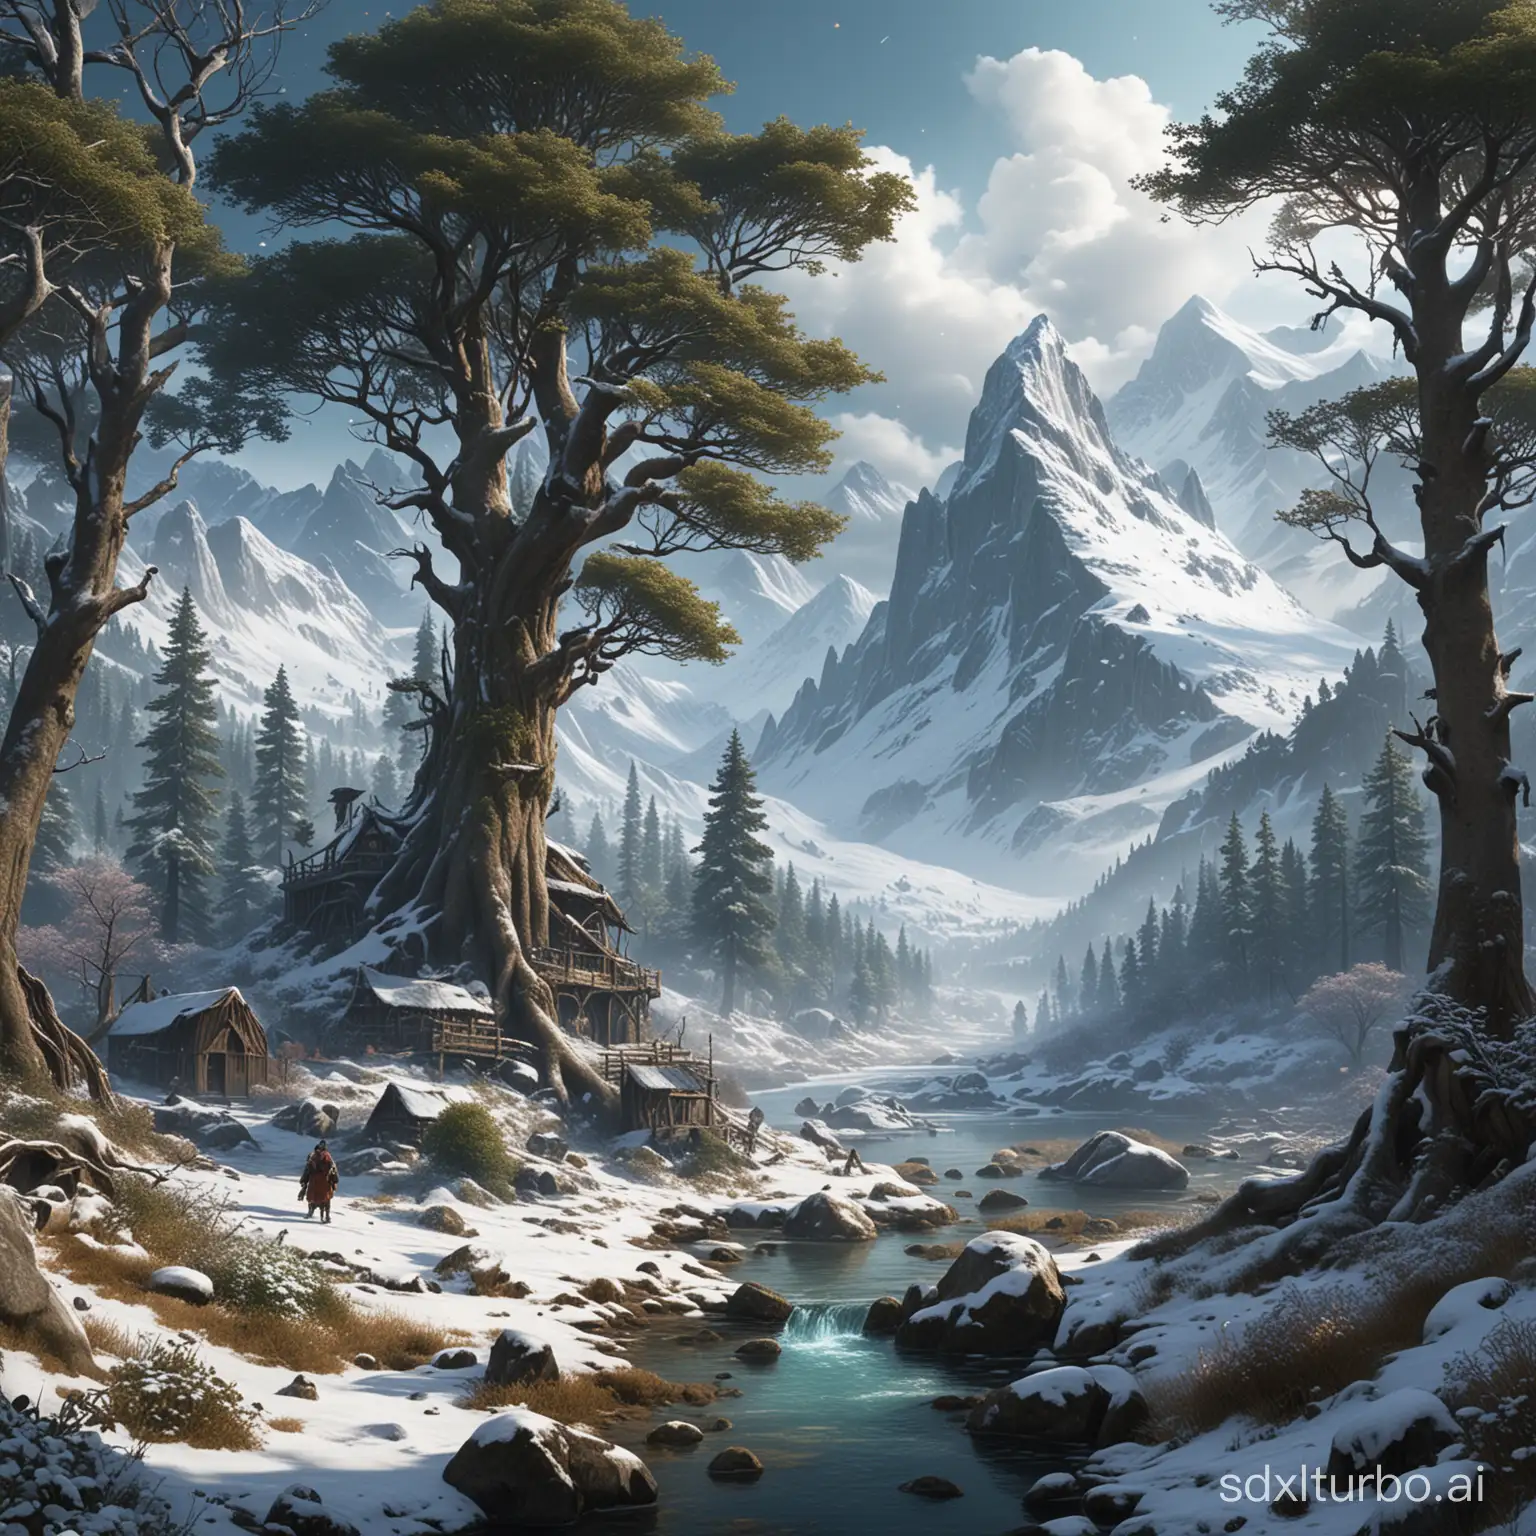 Escenario: Un mundo mágico y misterioso lleno de criaturas fantásticas y paisajes impresionantes, como bosques encantados y montañas nevadas.